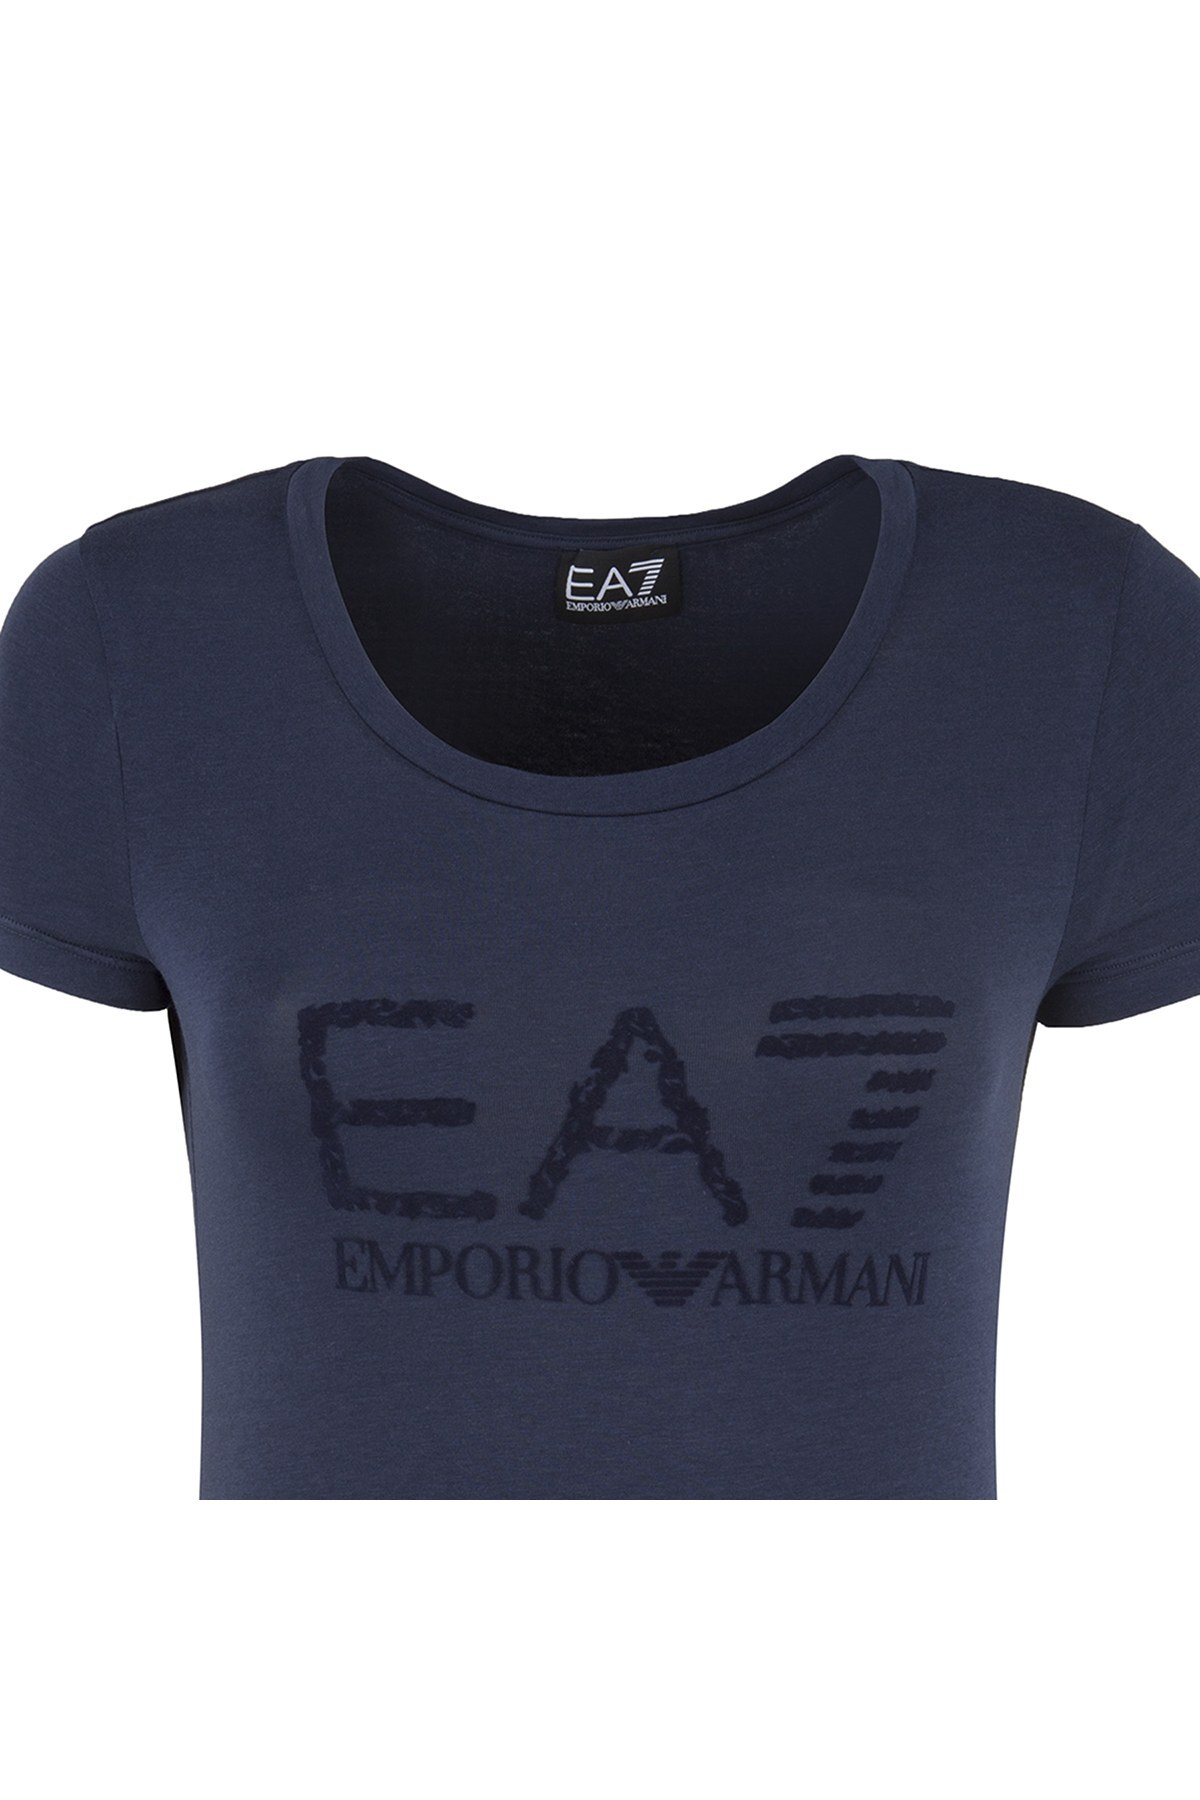 EA7 T SHIRT Bayan T Shirt 6ZTT02 TJ28Z 1554 LACİVERT